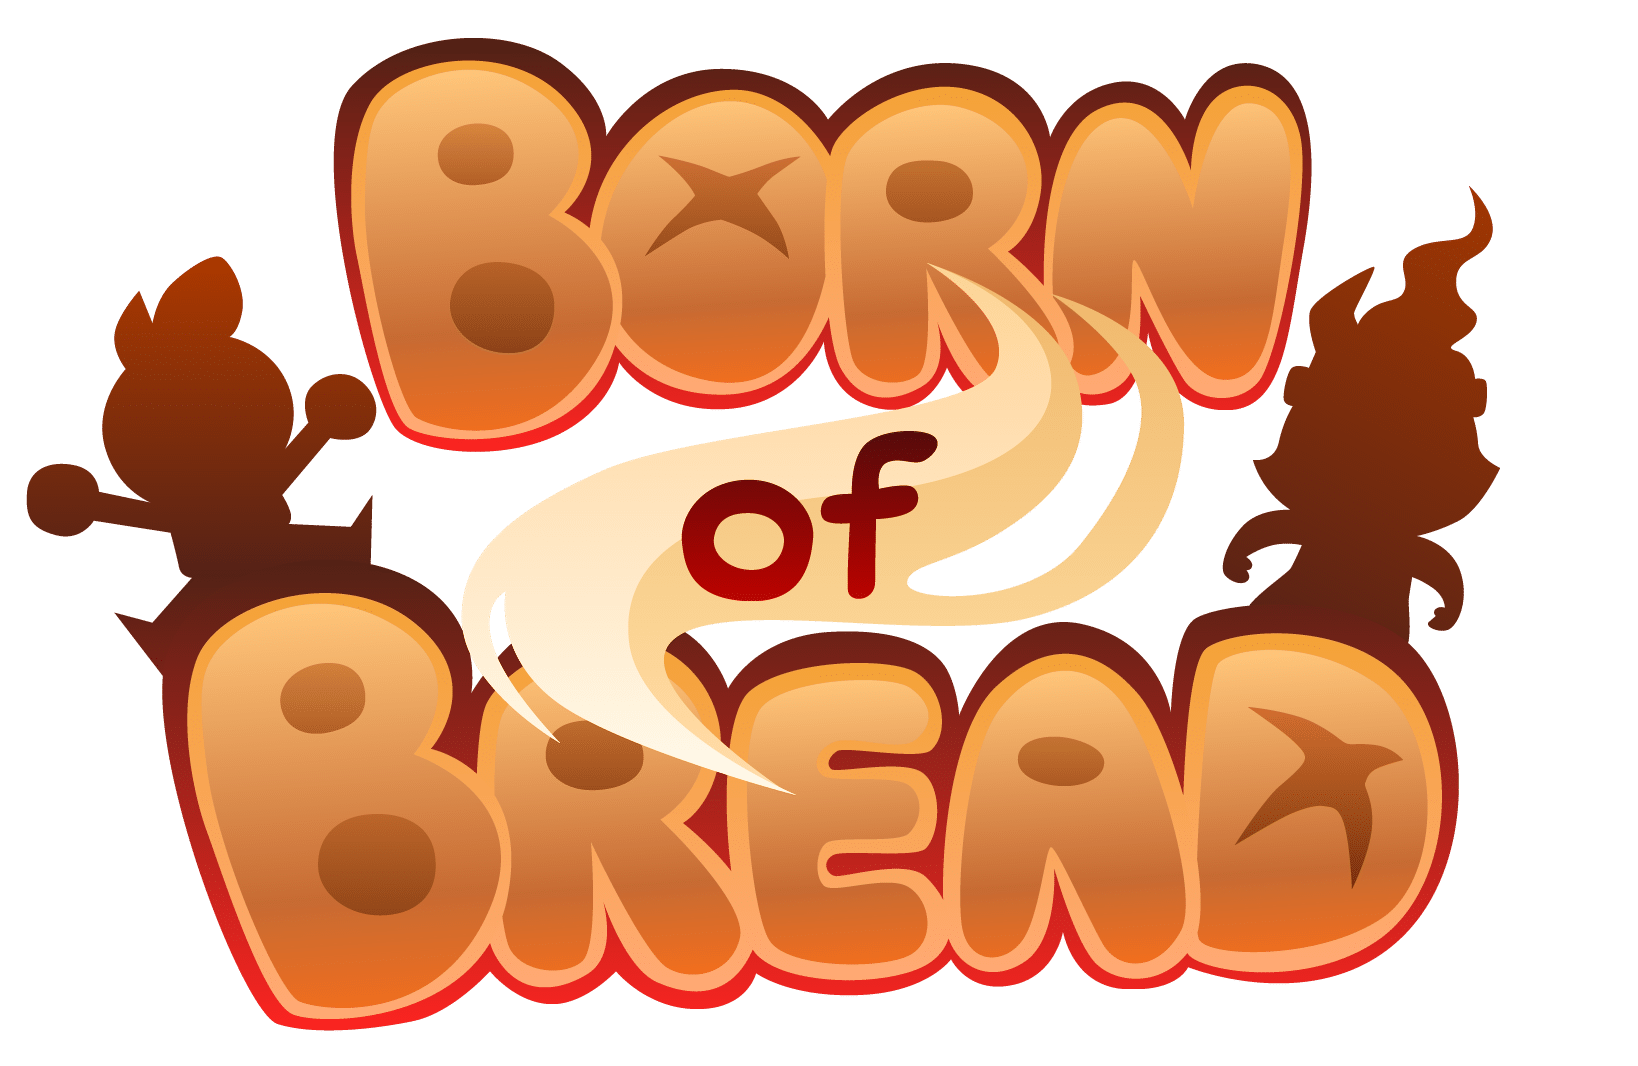 Born of bread